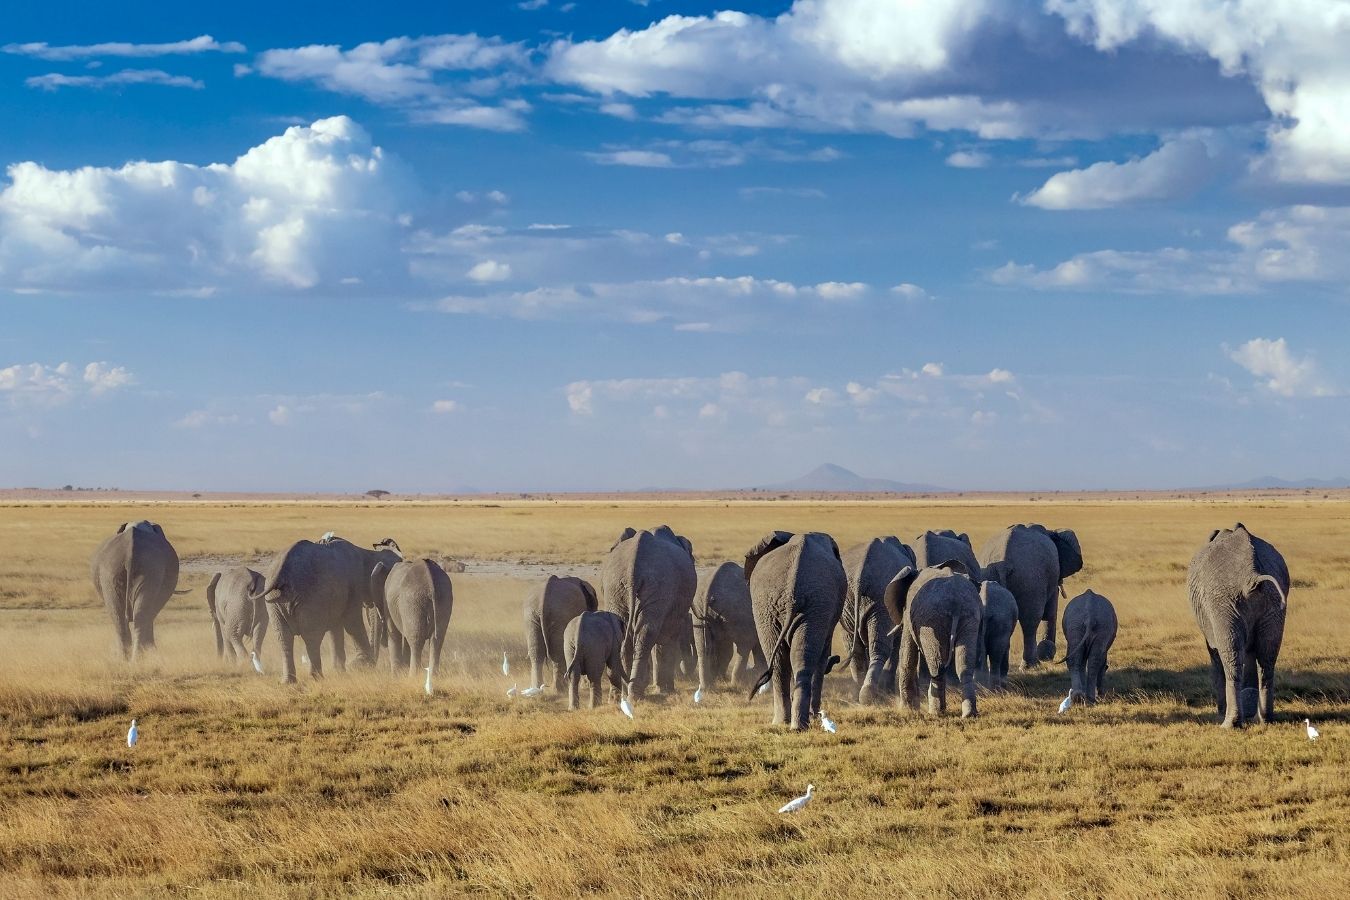 7 Days Kenya Safari Lake Nakuru, Masai Mara, Naivasha and Amboseli National Park Vacation East Africa Limited